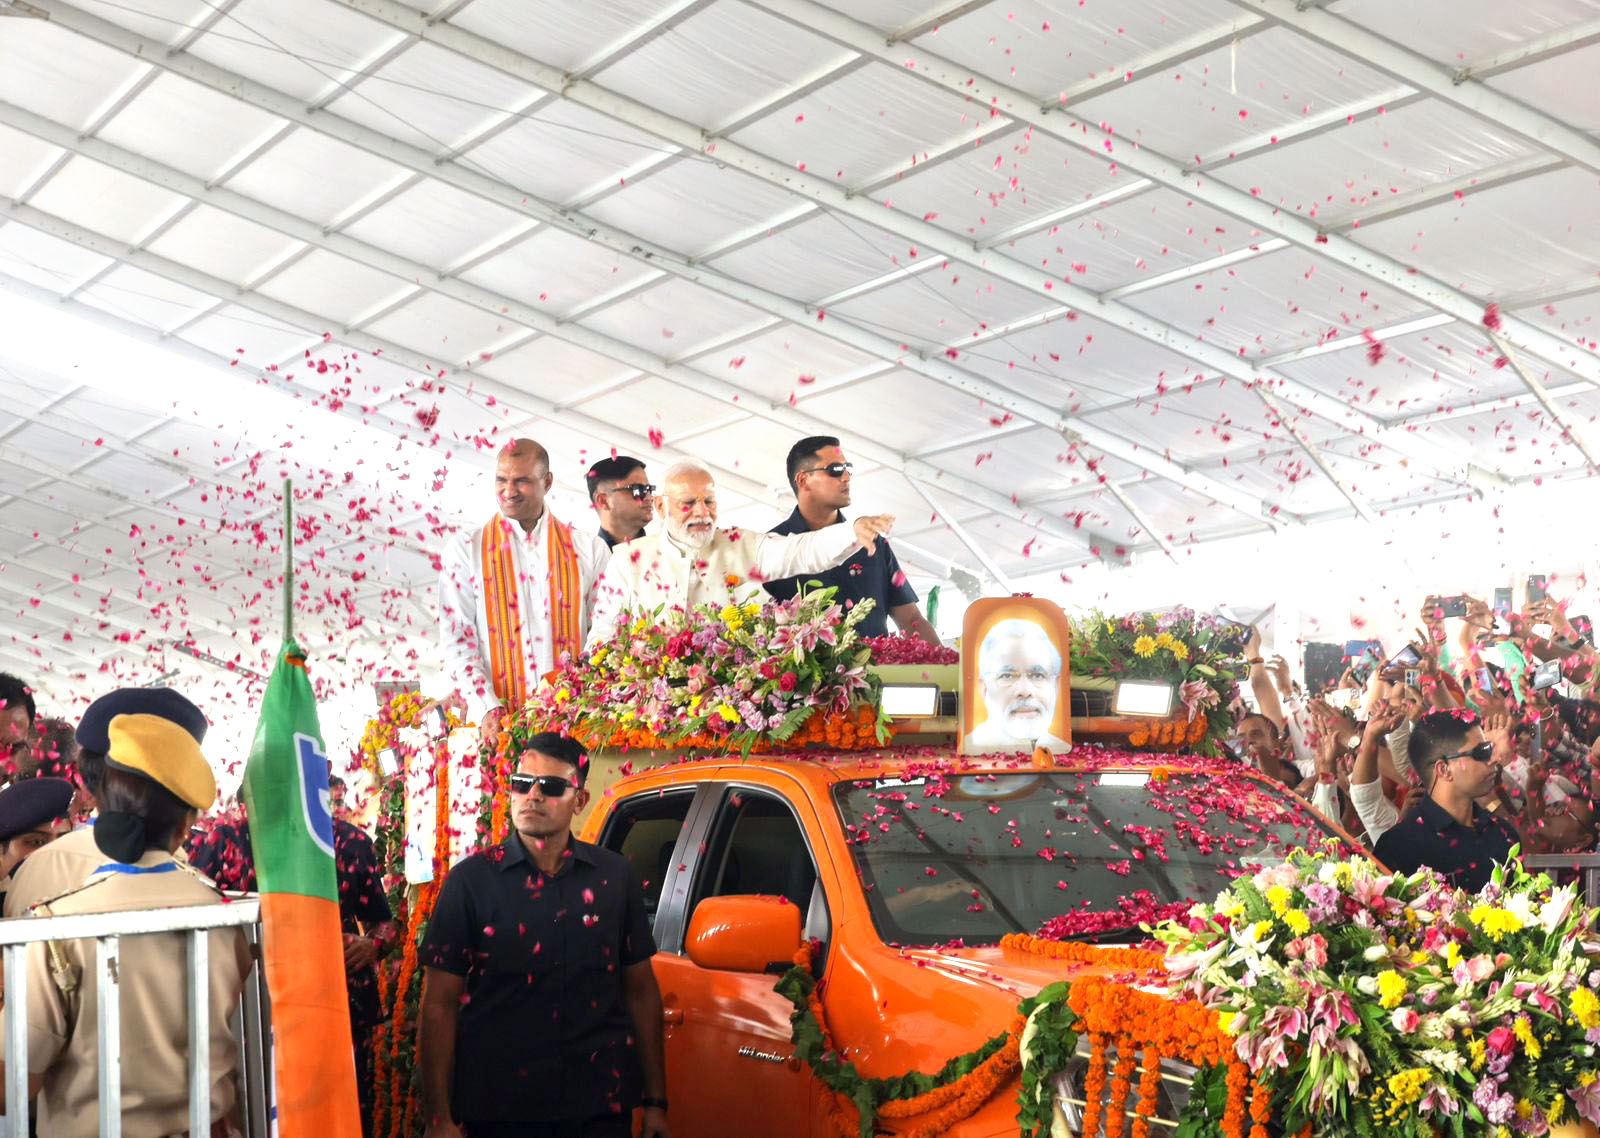 PM Modi in Chittorgarh